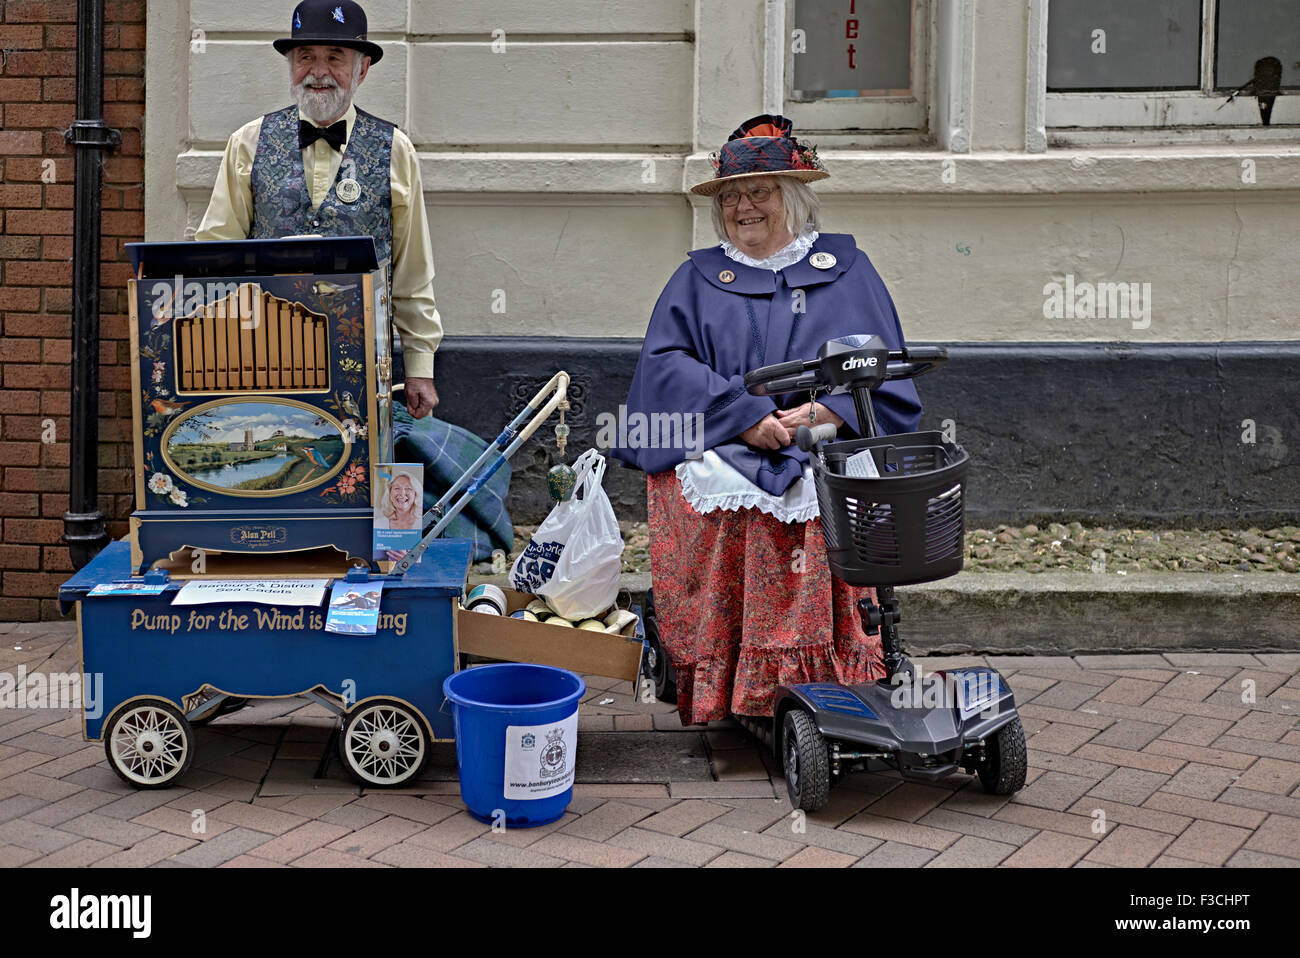 Meuleuse d'organes Royaume-Uni.Meuleuses d'orgue pour mari et femme habillées d'une tenue vintage.Artistes de rue Angleterre Royaume-Uni Banque D'Images